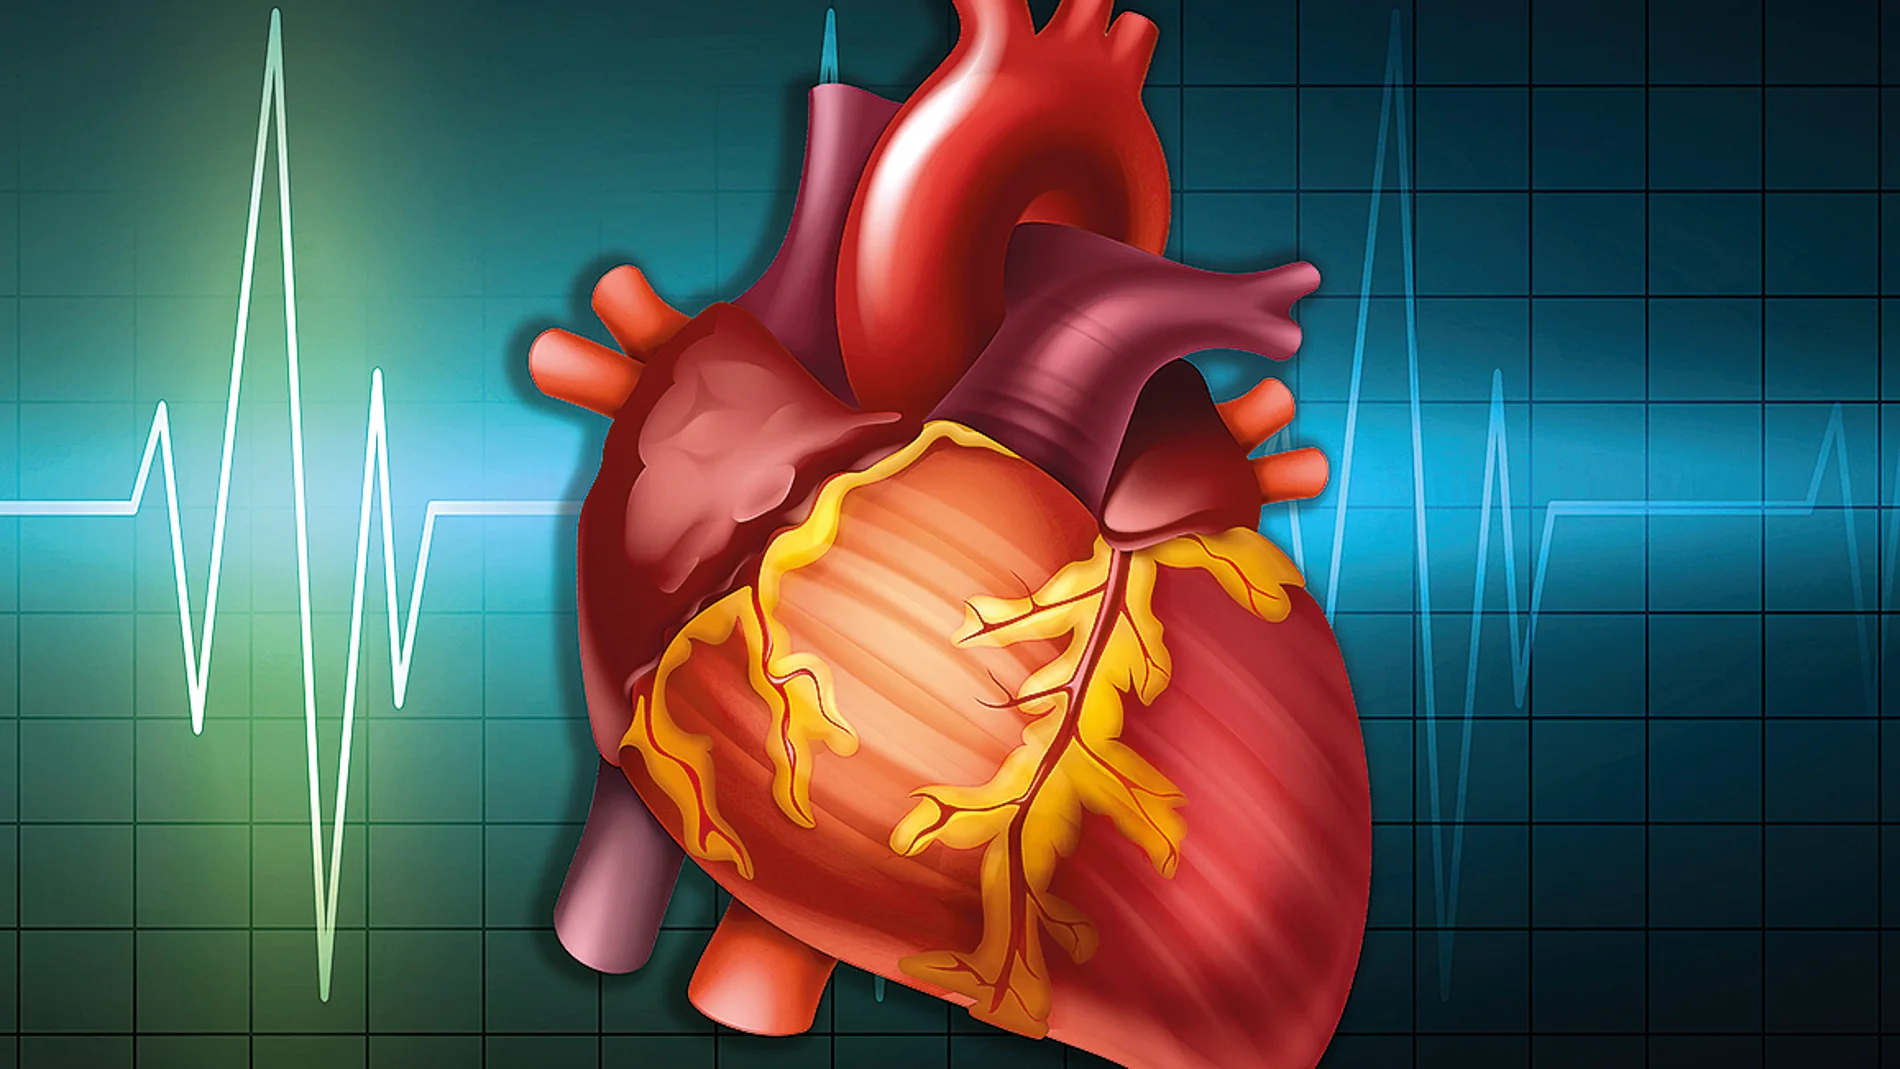 Los aumentos de los niveles de colesterol son un factor muy importante de riesgo para sufrir una enfermedad cardiovascular.